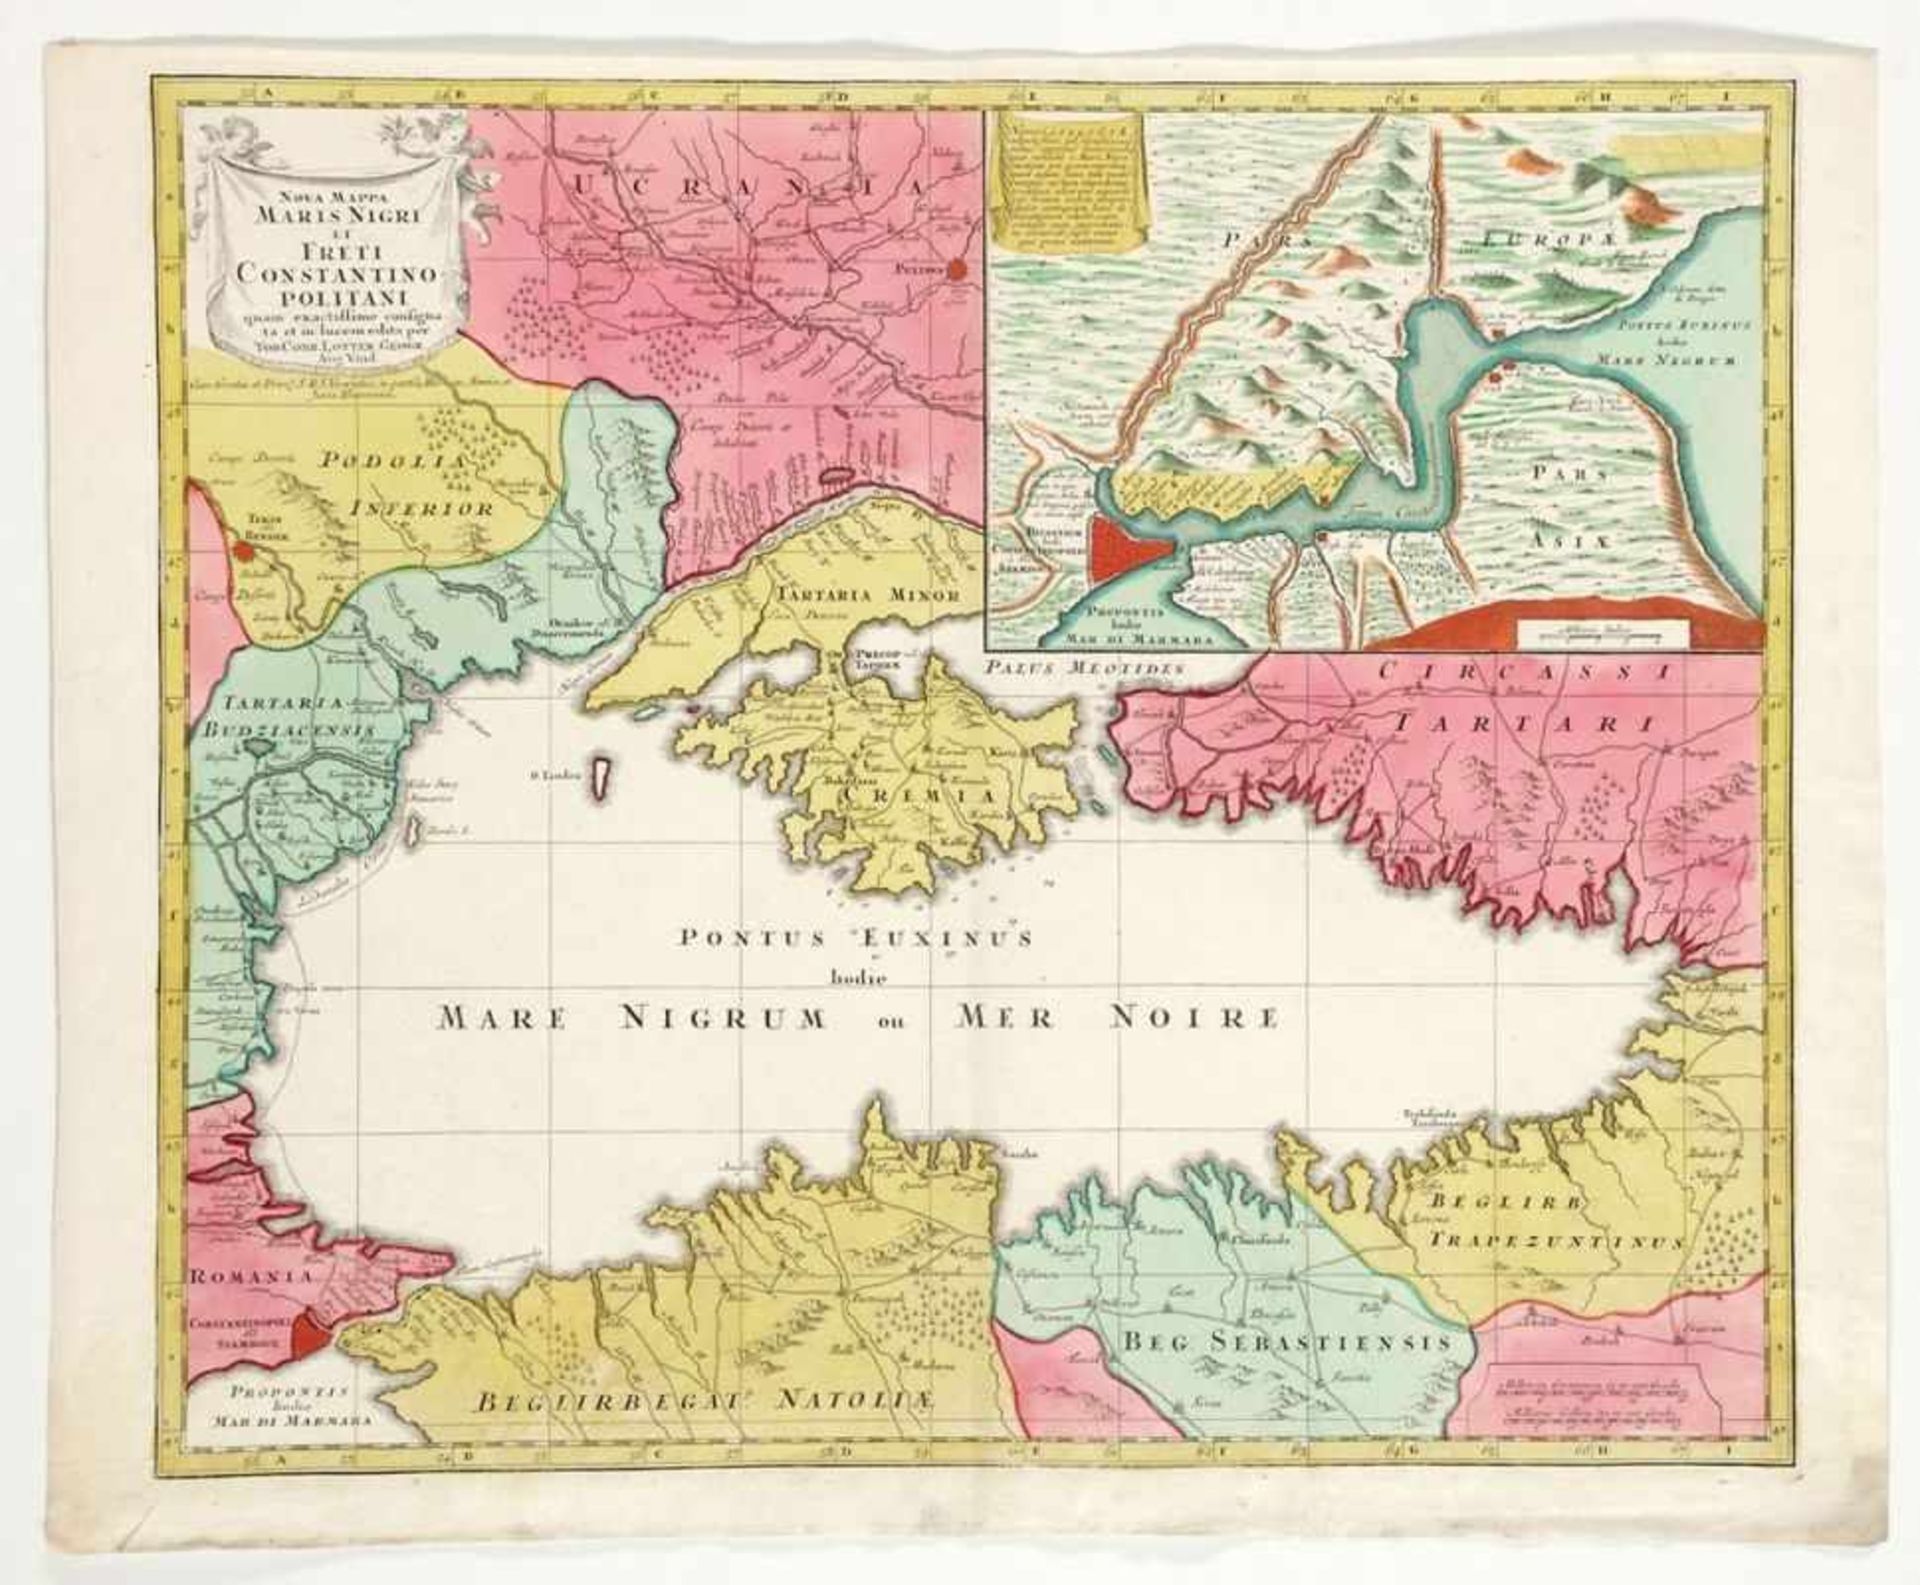 Tobias Konrad Lotter1717 - 1777 - "Nova mappa maris nigri et freti constantino Politani" - Kolor.